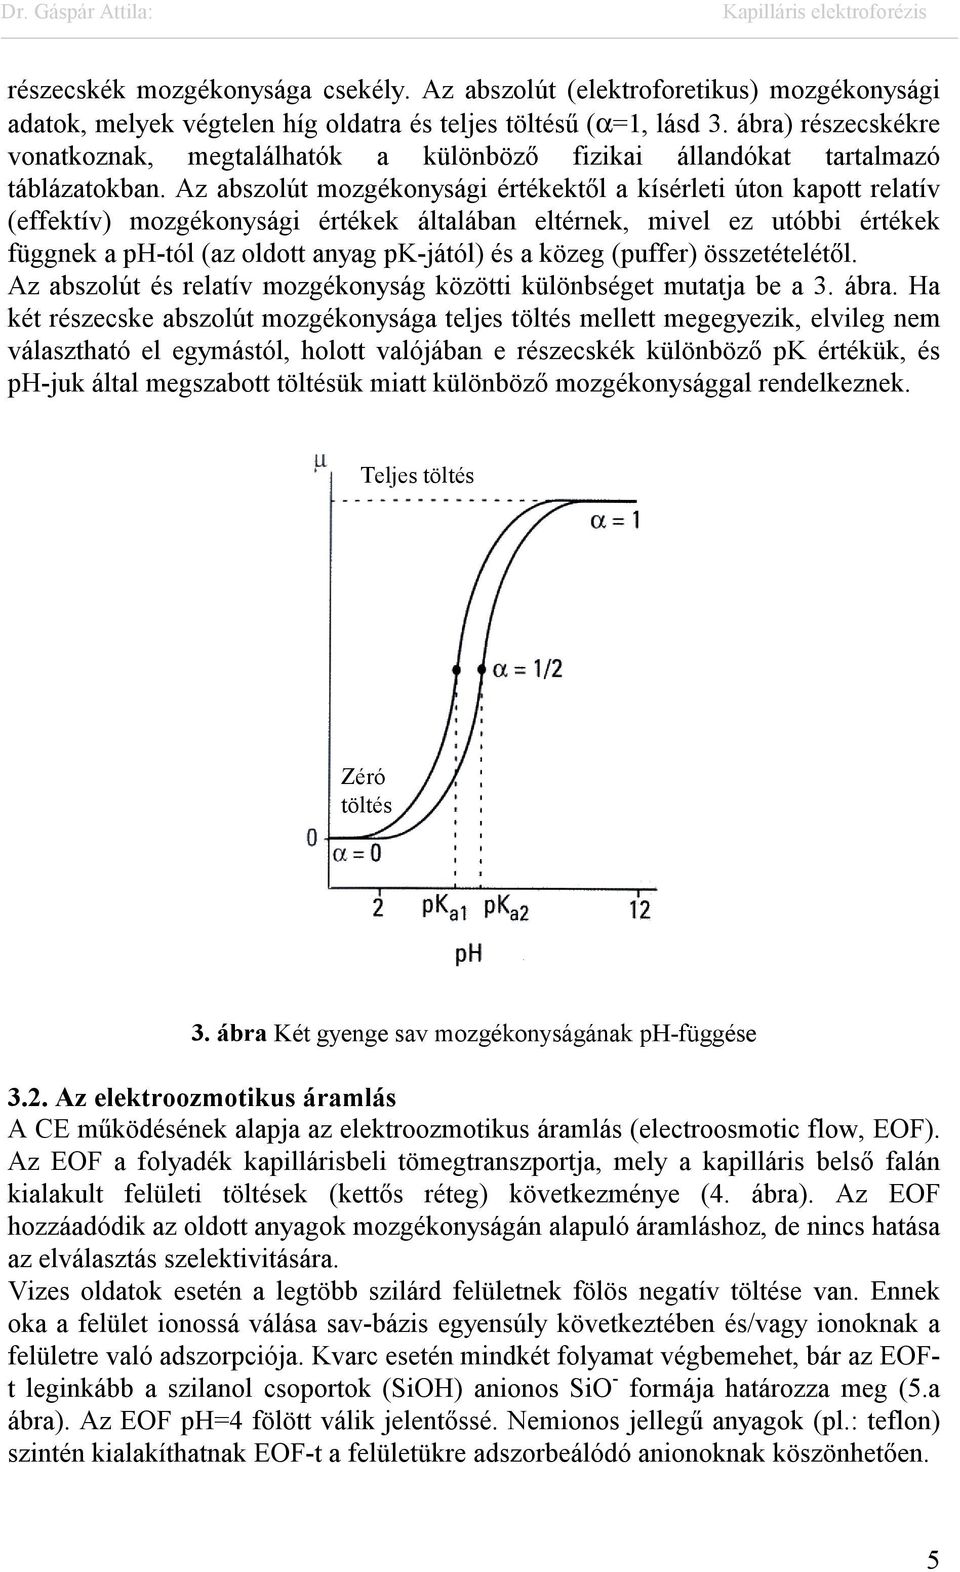 Az abszolút mozgékonysági értékektől a kísérleti úton kapott relatív (effektív) mozgékonysági értékek általában eltérnek, mivel ez utóbbi értékek függnek a ph-tól (az oldott anyag pk-jától) és a